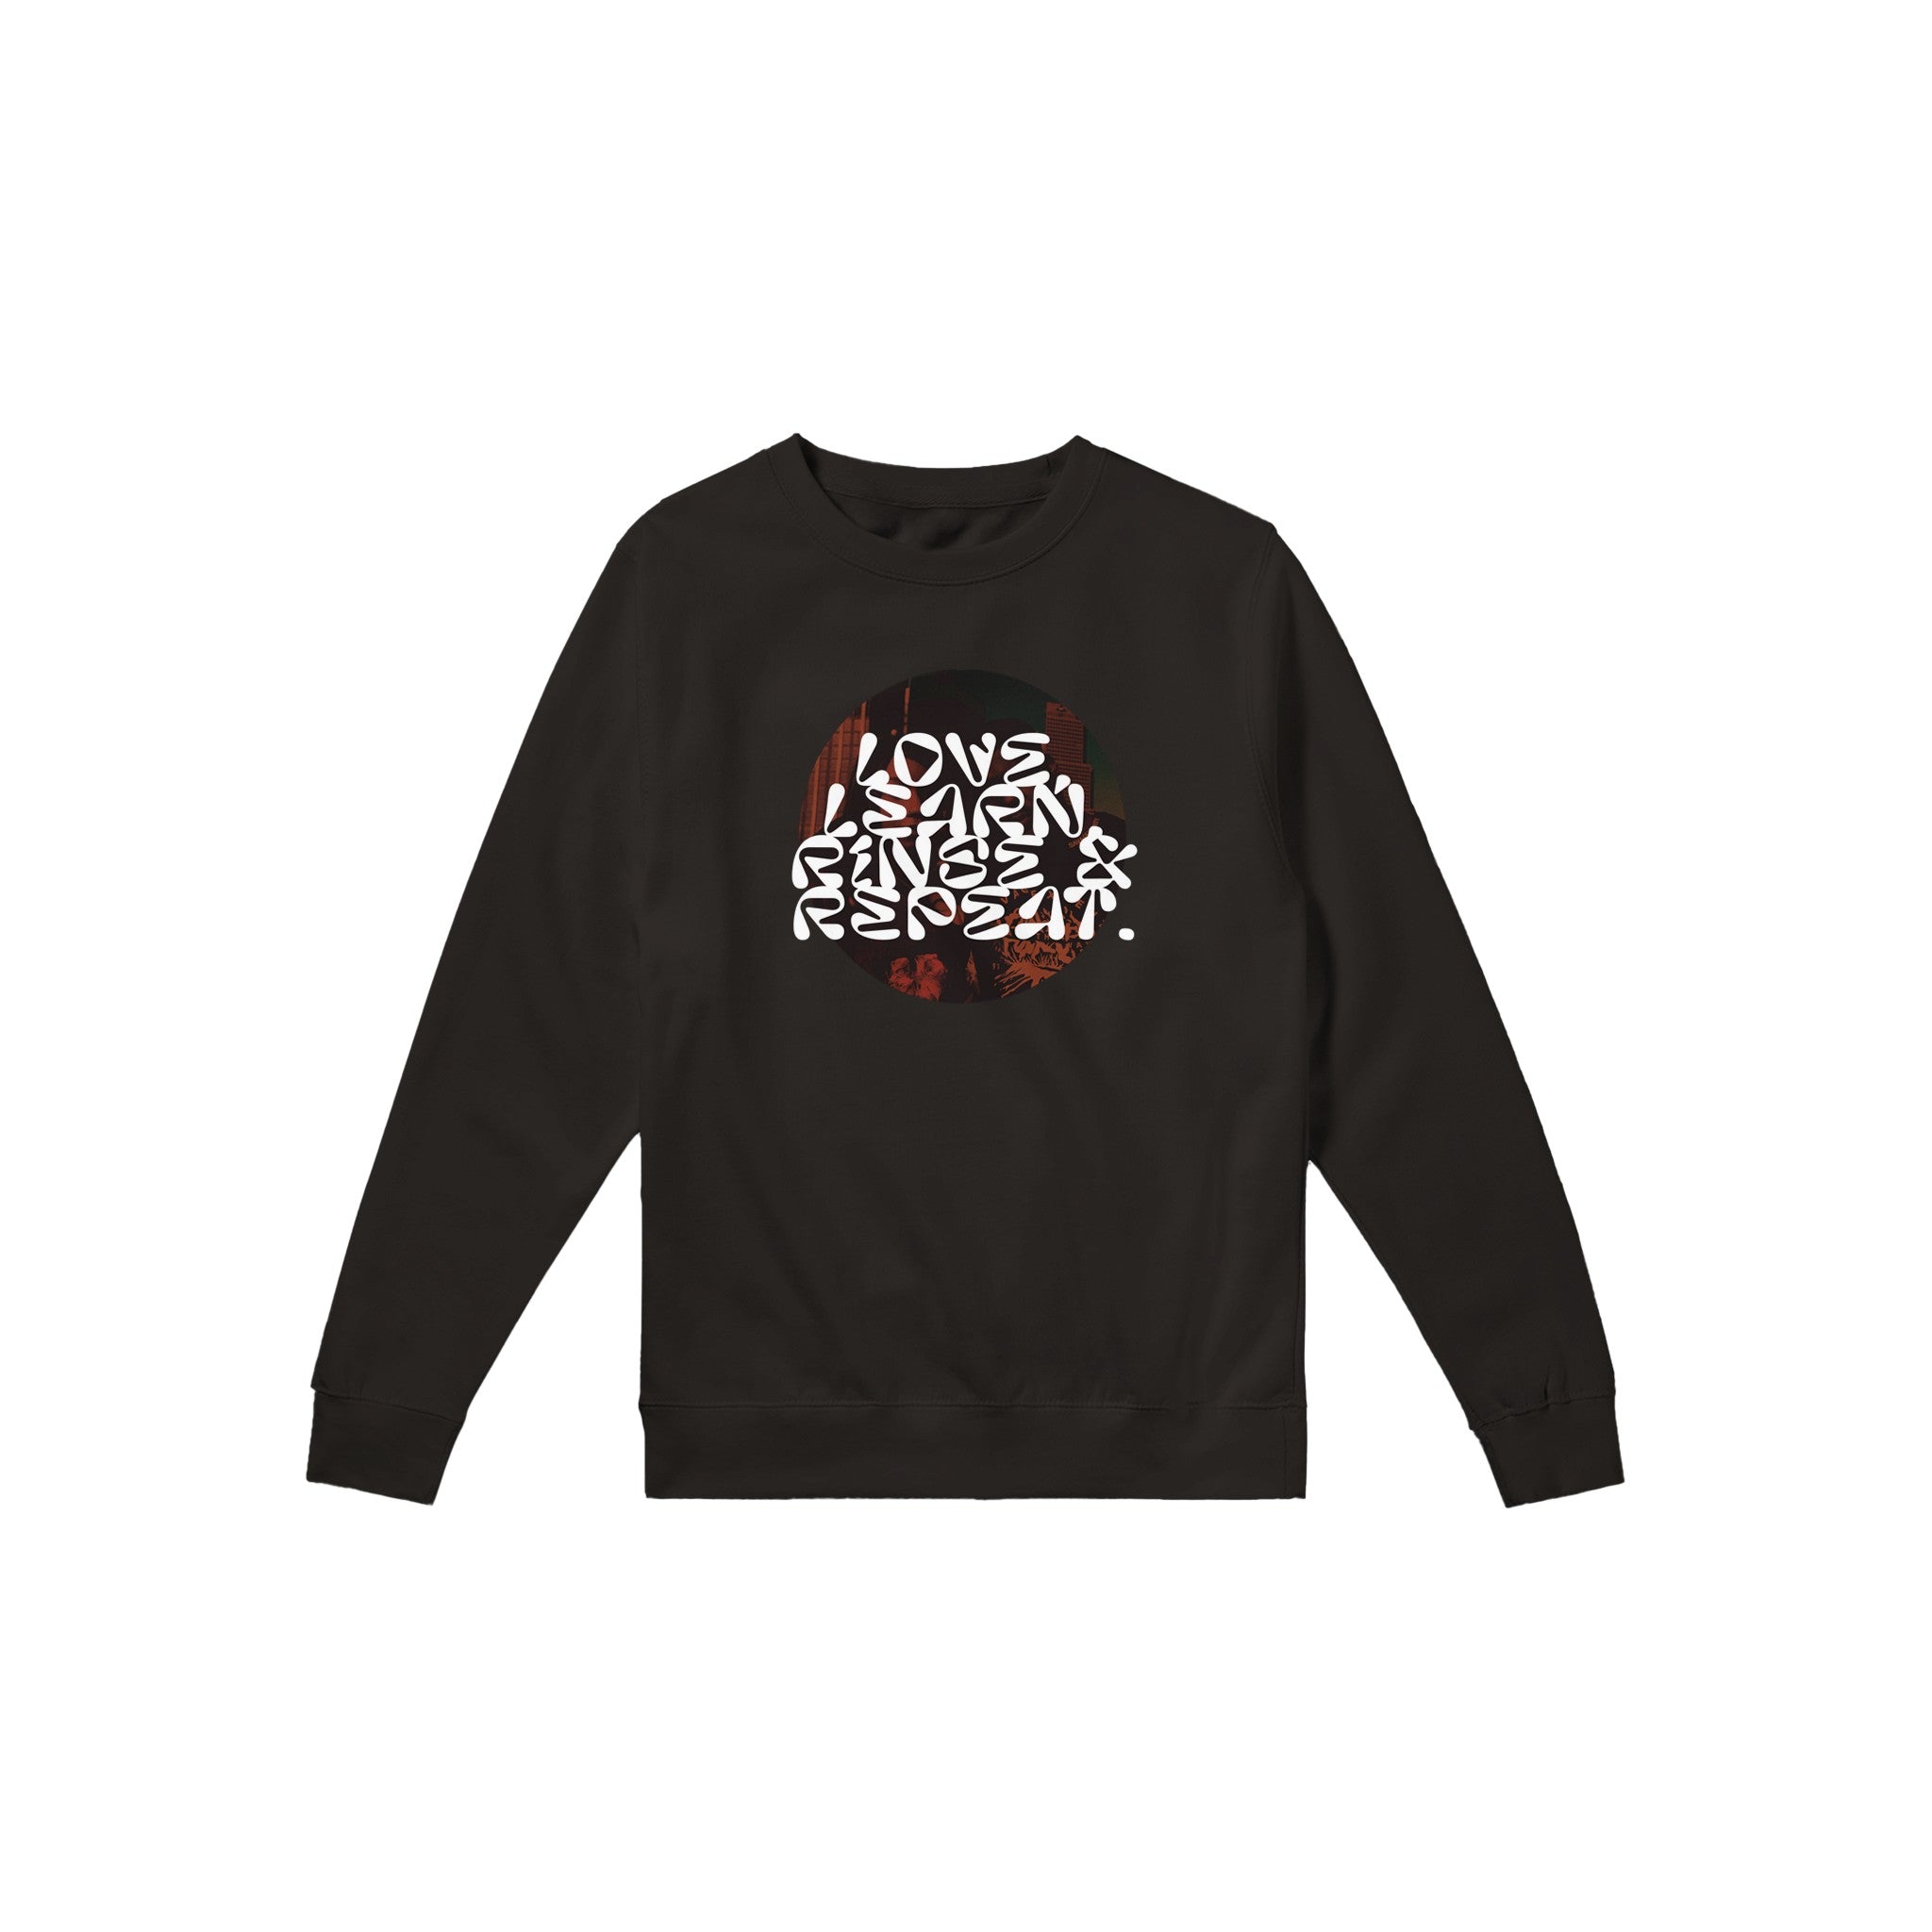 "Rinse & Repeat" - Premium Unisex Crewneck Sweatshirt